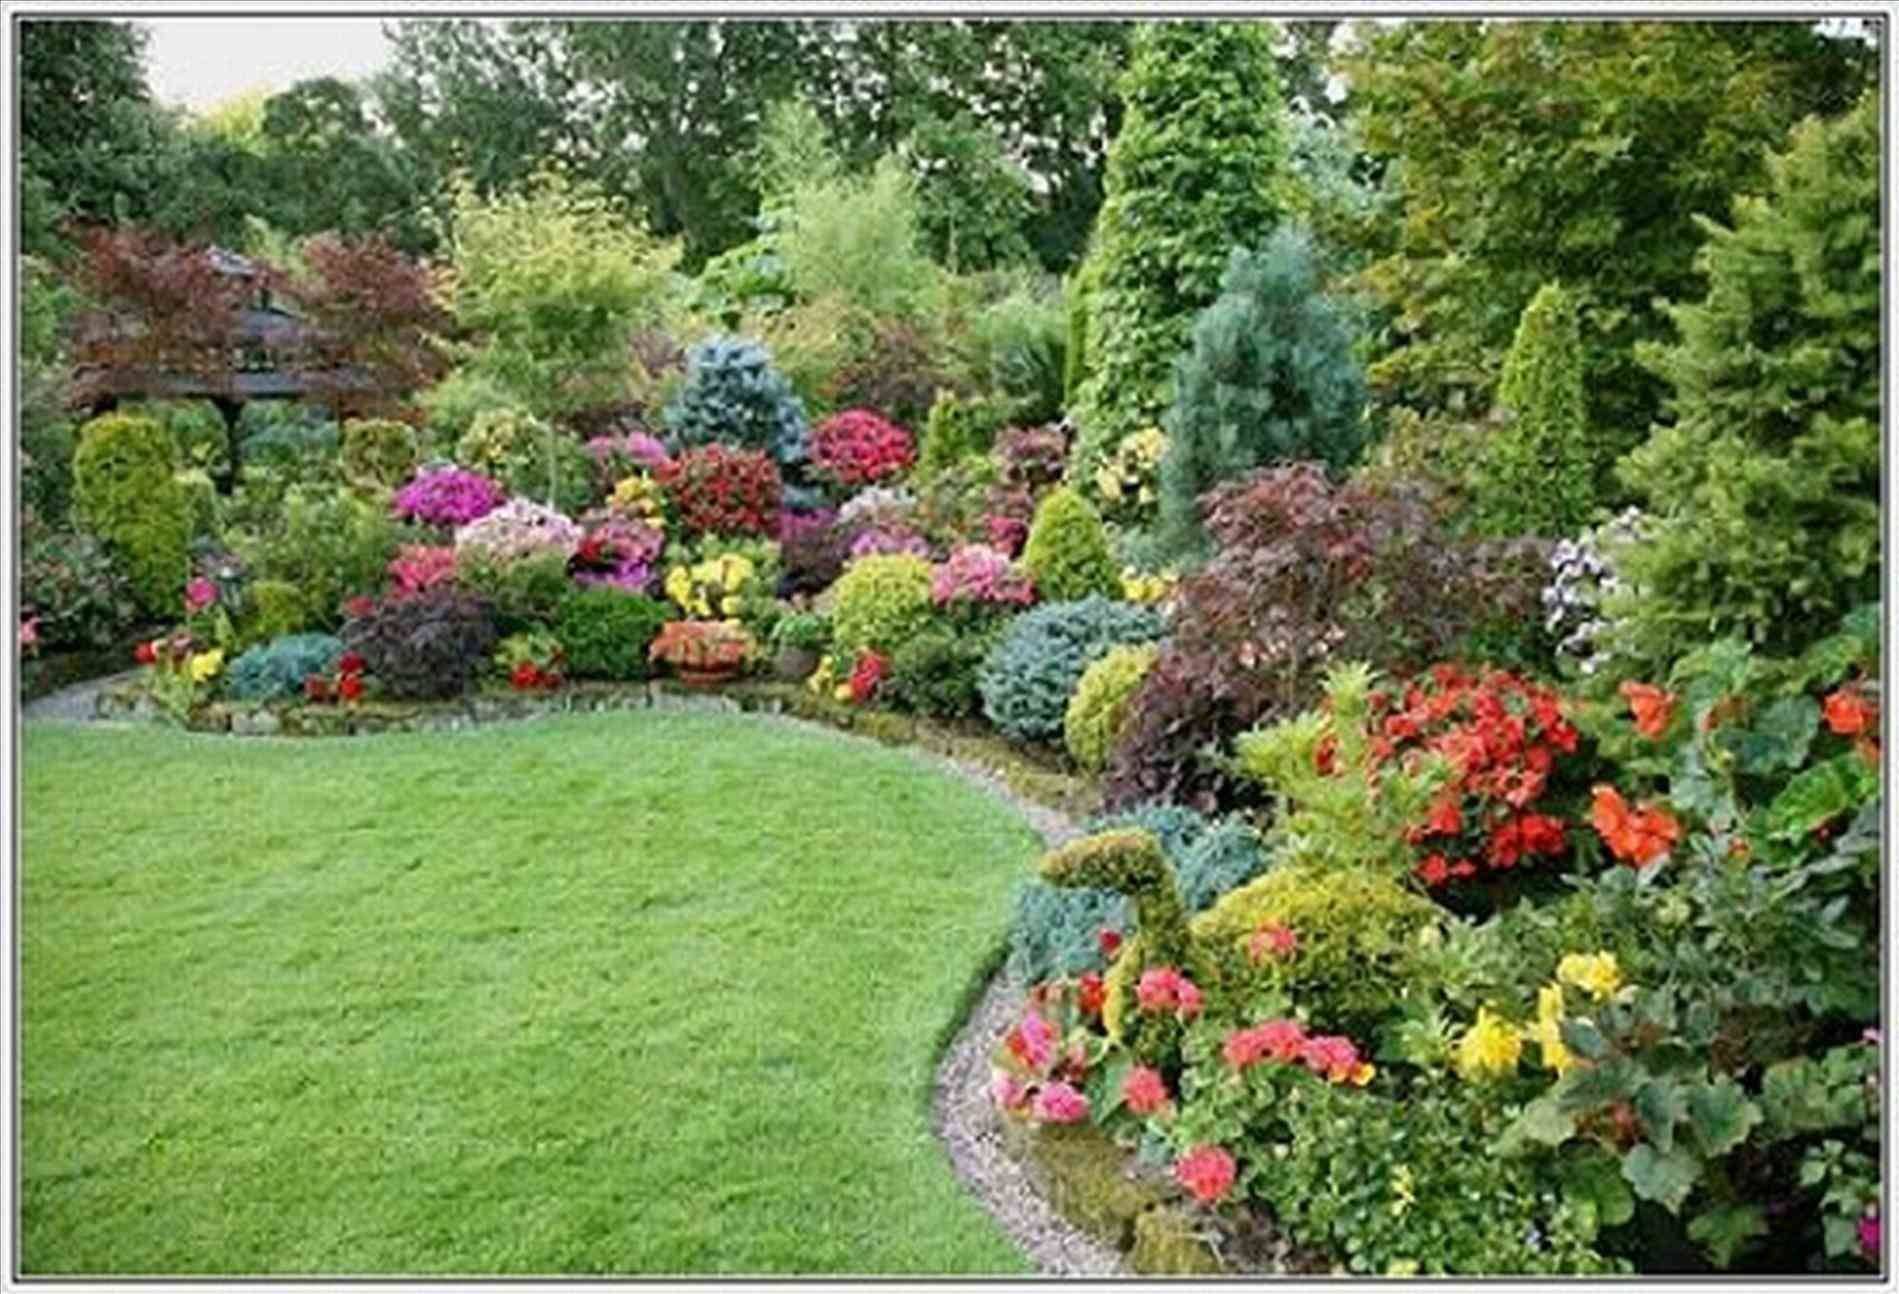 Pacific Northwest Garden Ideas